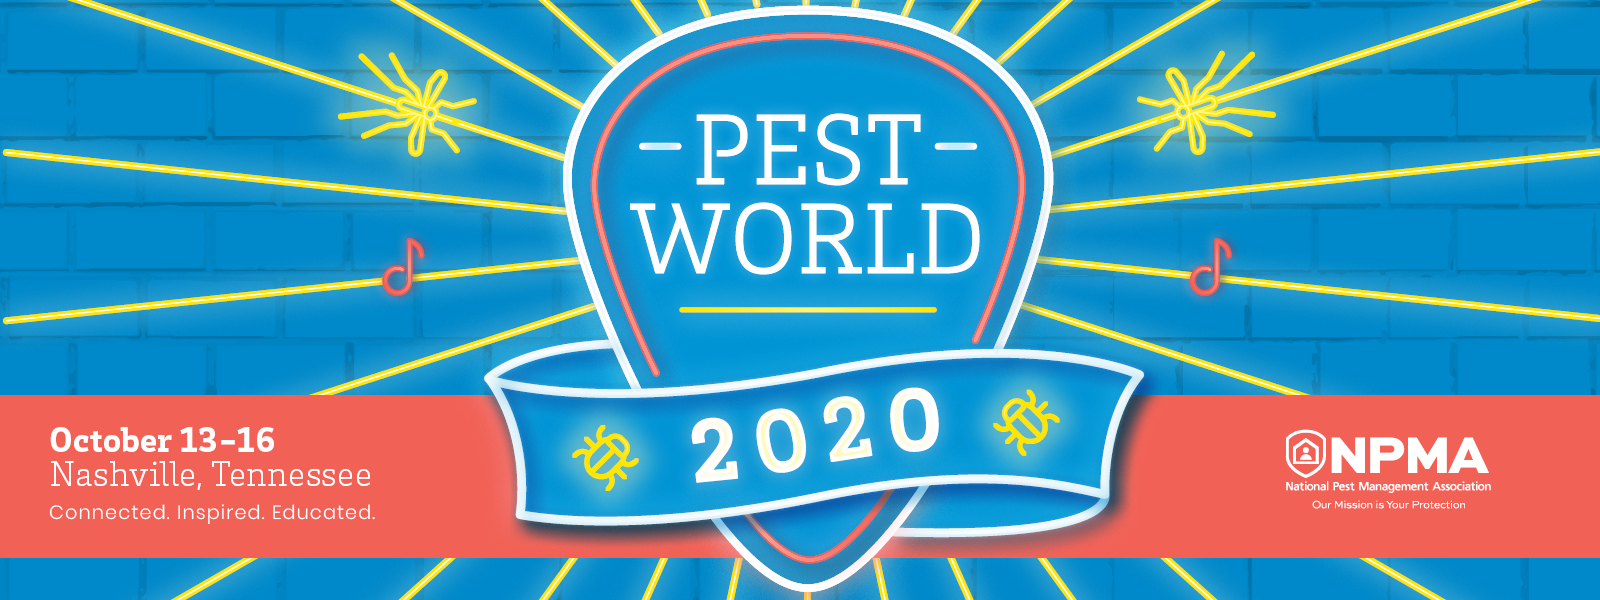 PestWorld 2020 Header Image